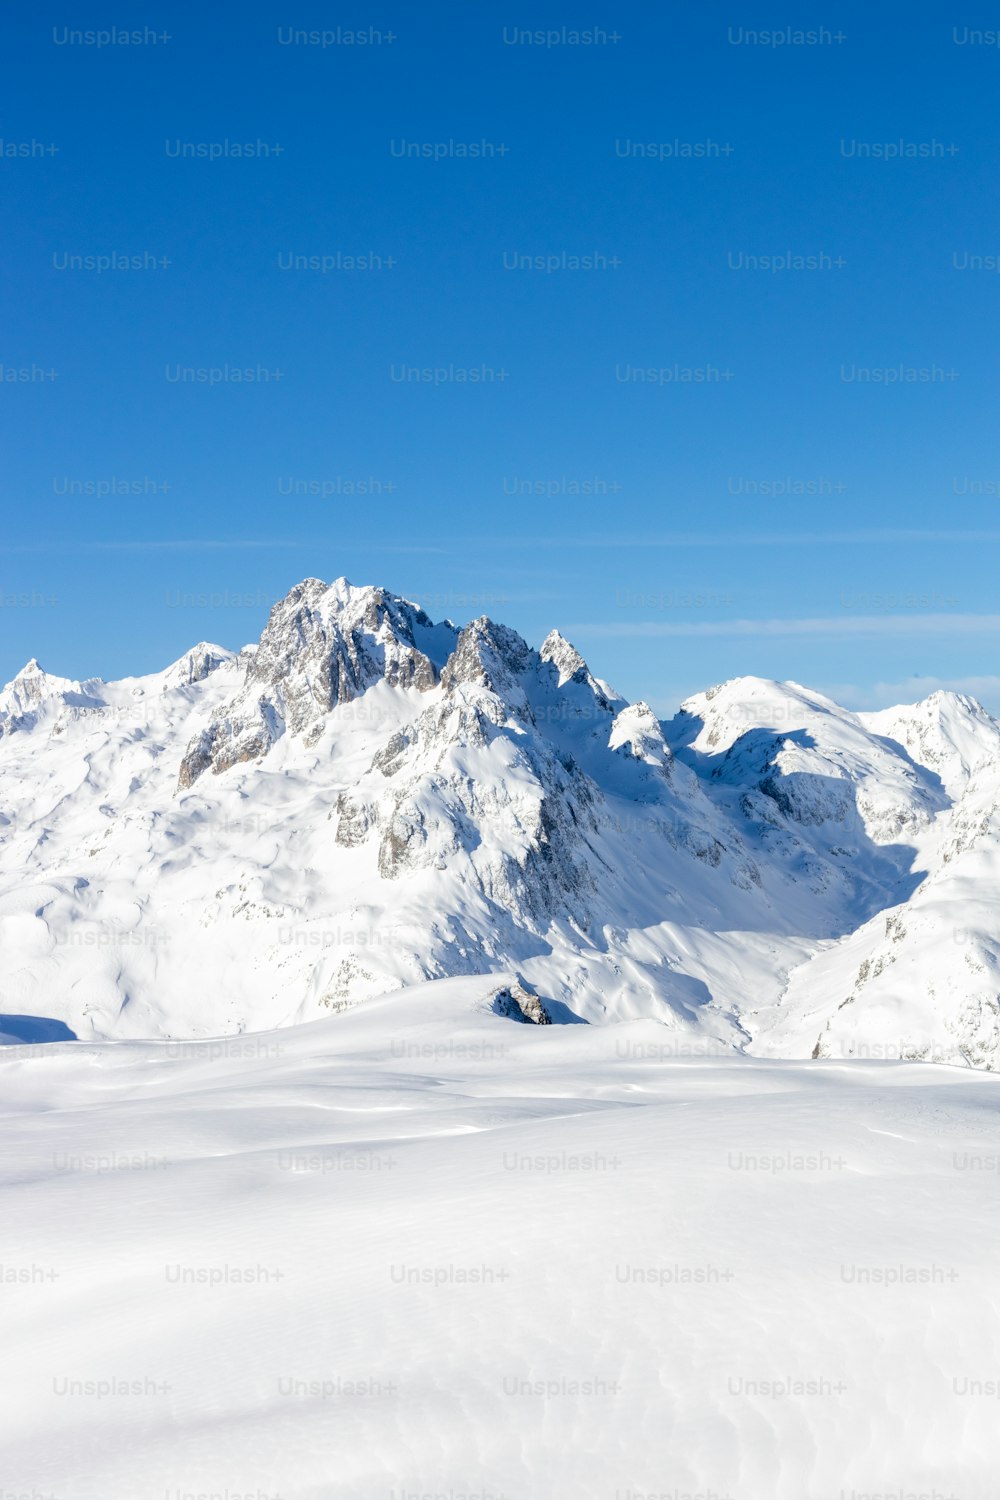 Un hombre montando esquís en la cima de una pendiente cubierta de nieve